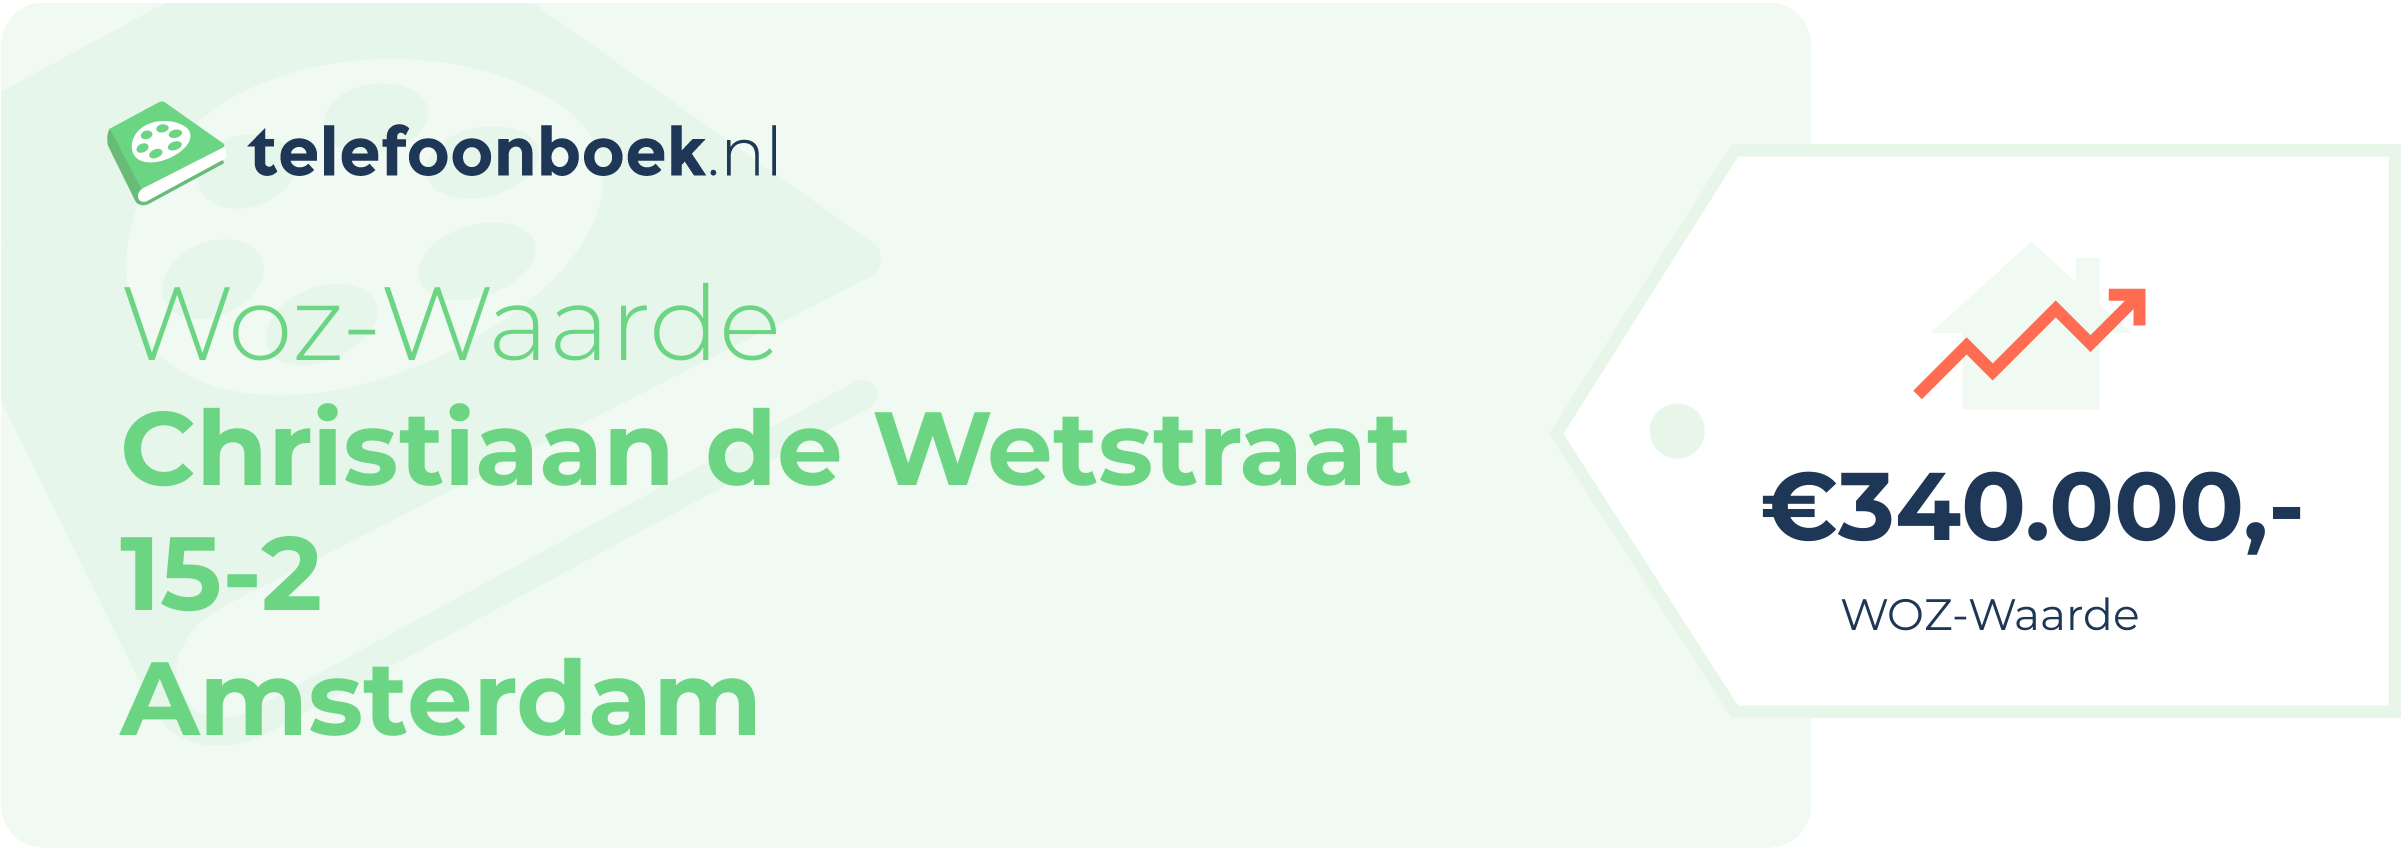 WOZ-waarde Christiaan De Wetstraat 15-2 Amsterdam